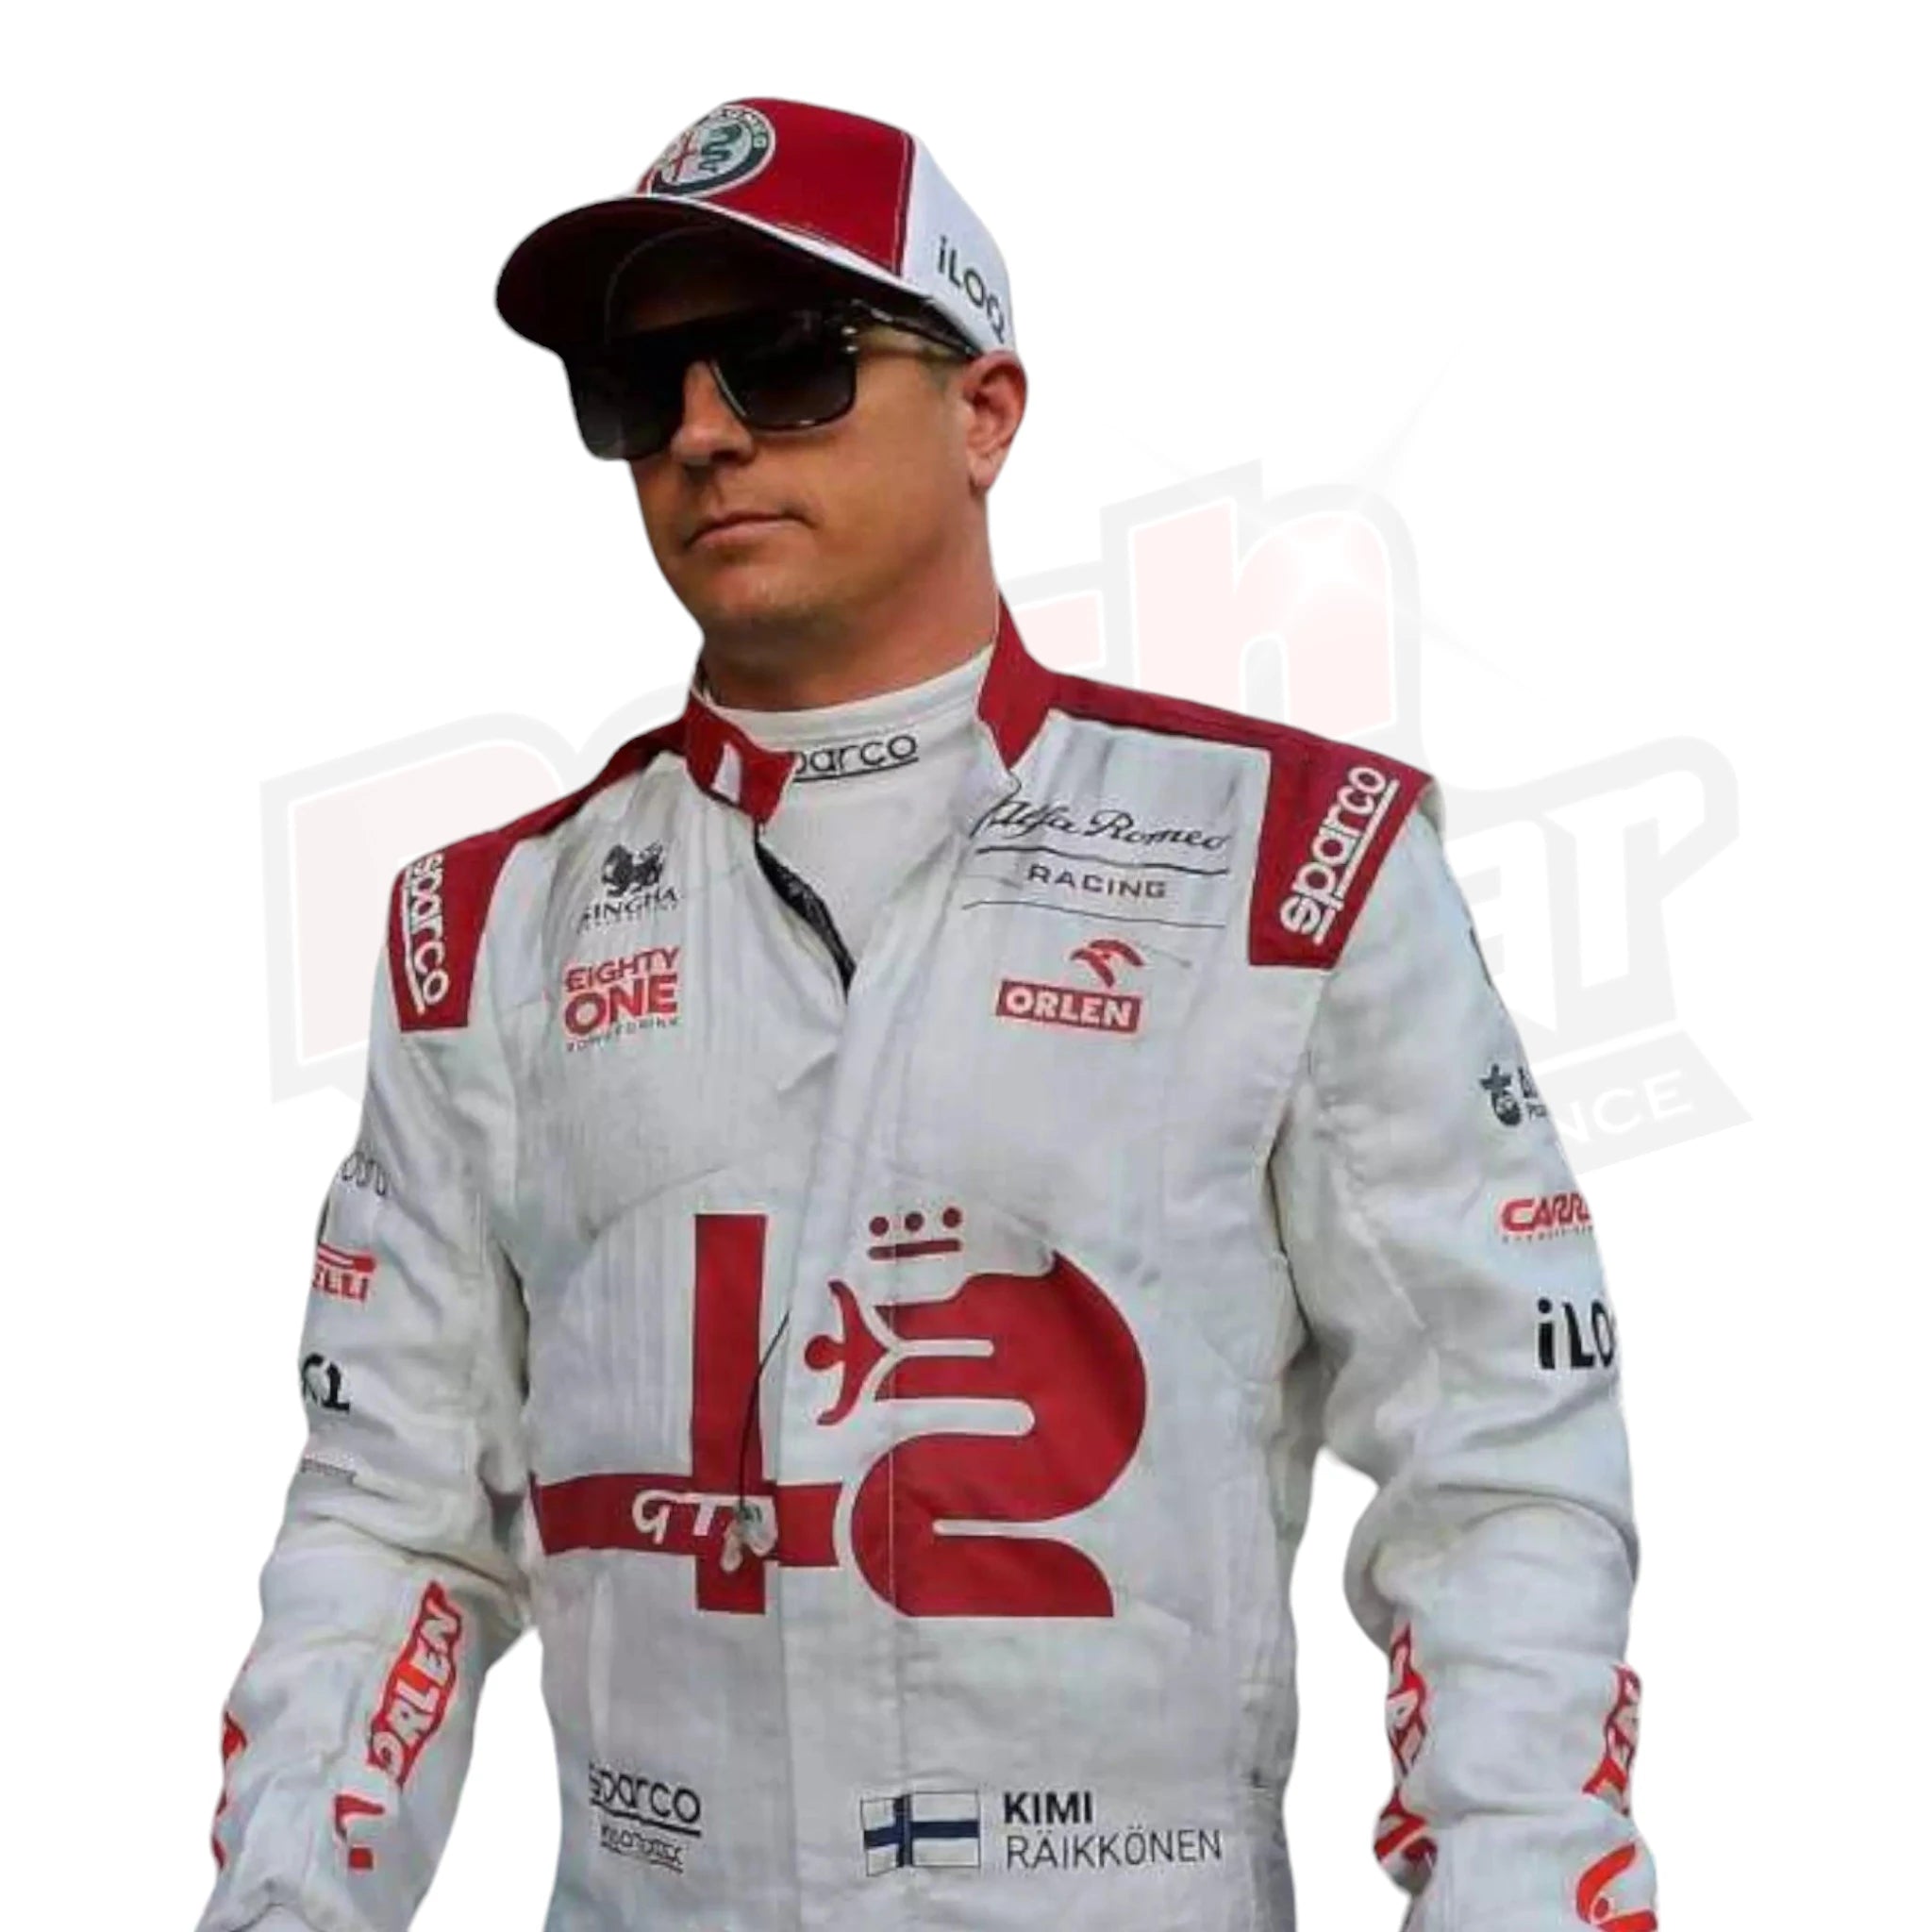 2021 Kimi Räikkönen Alfa Romeo F1 Team Race Suit